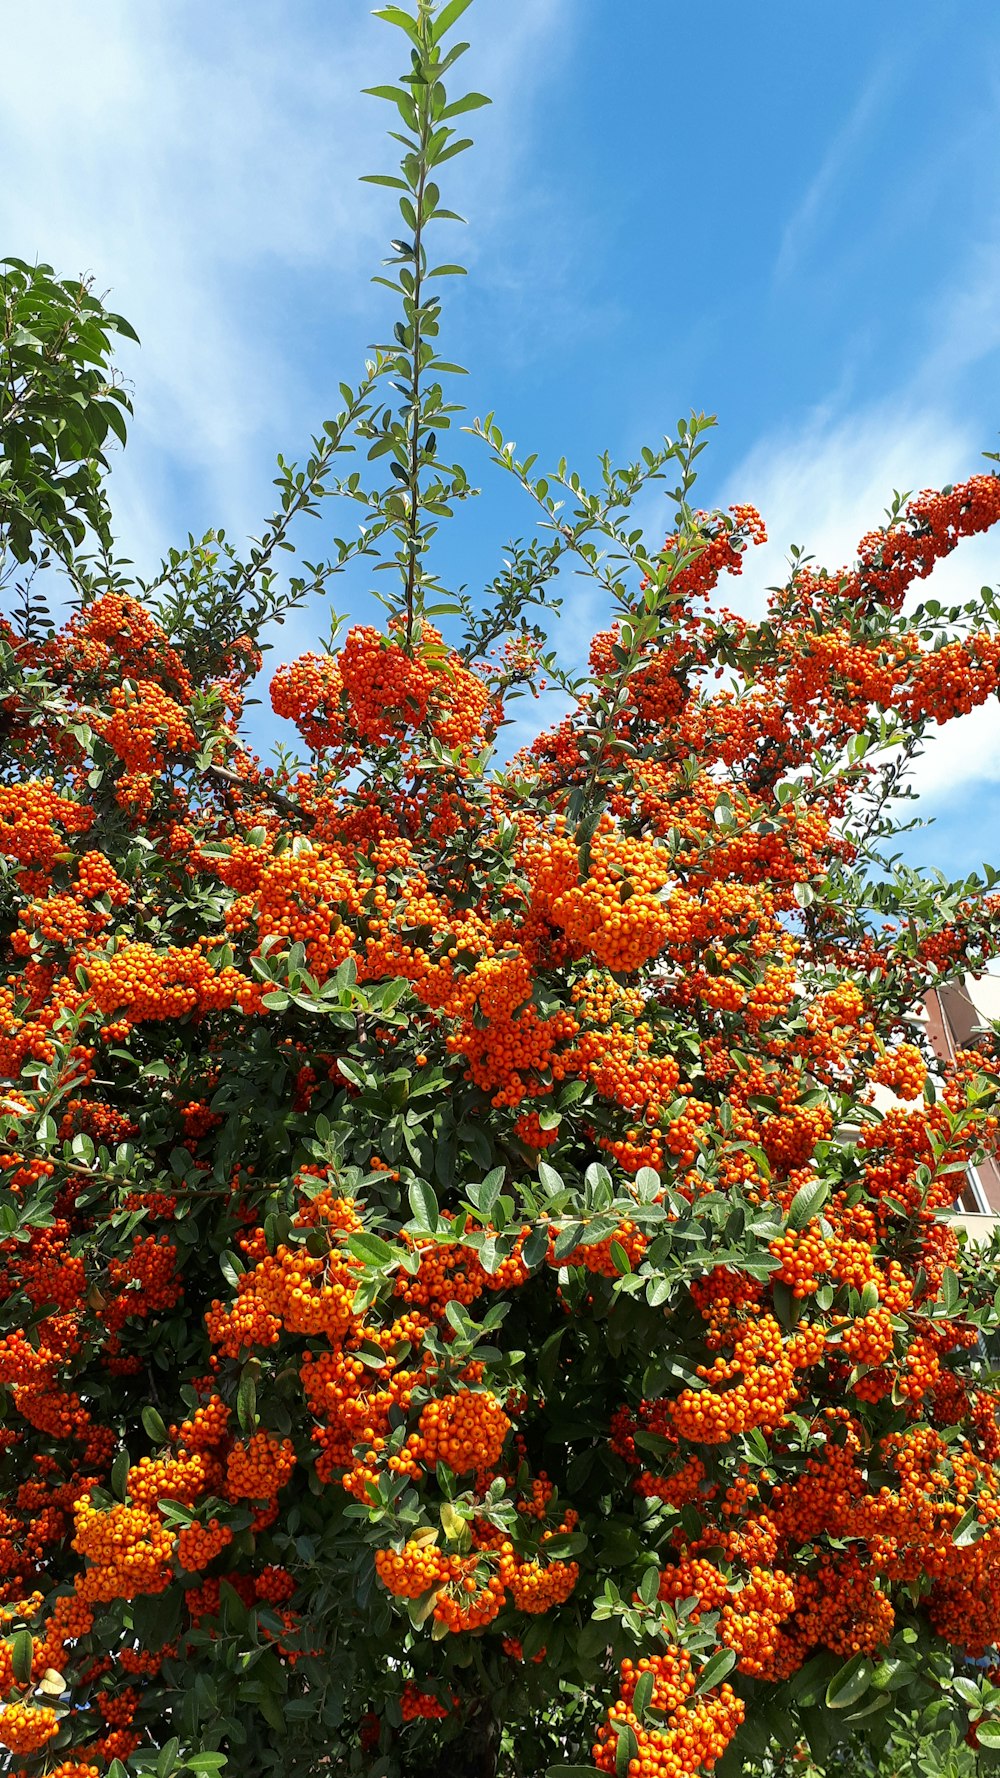 orange bearing plant during daytime